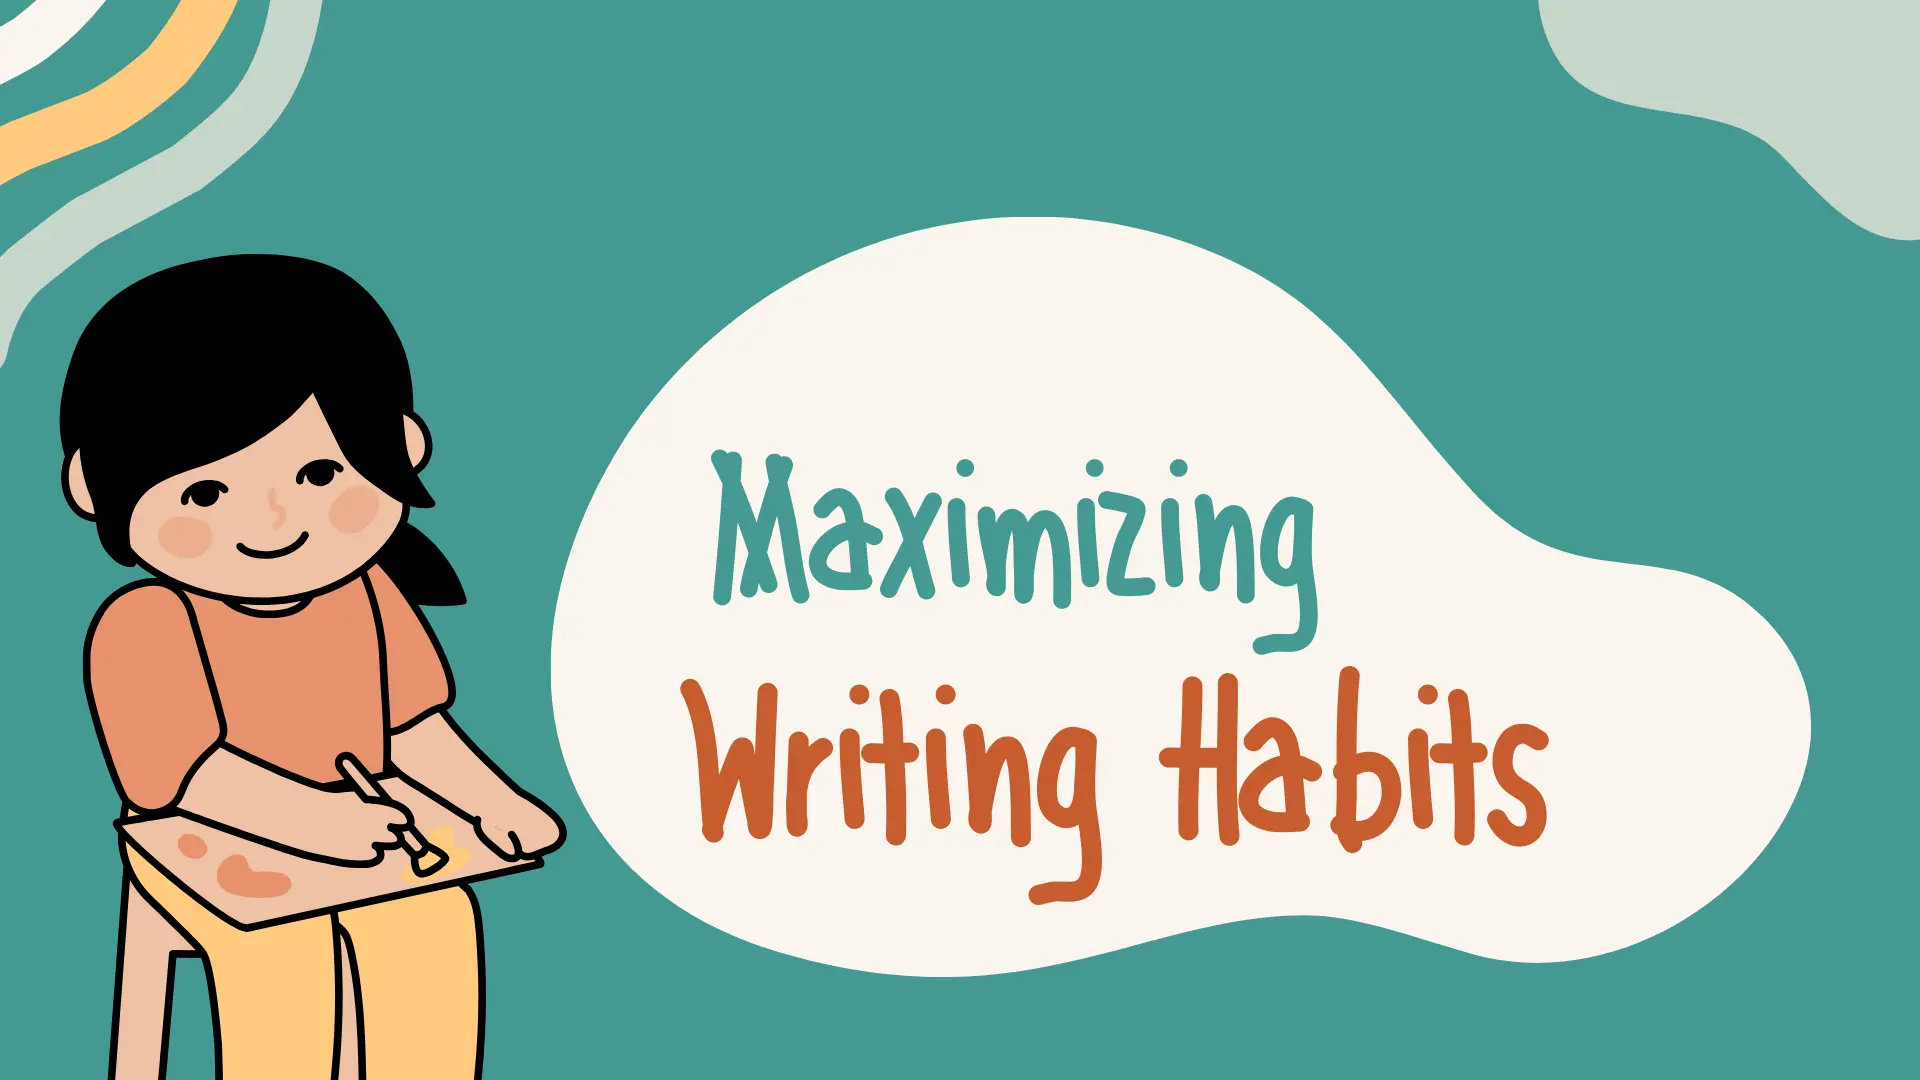 Maximizing Writing Habits and Productivity